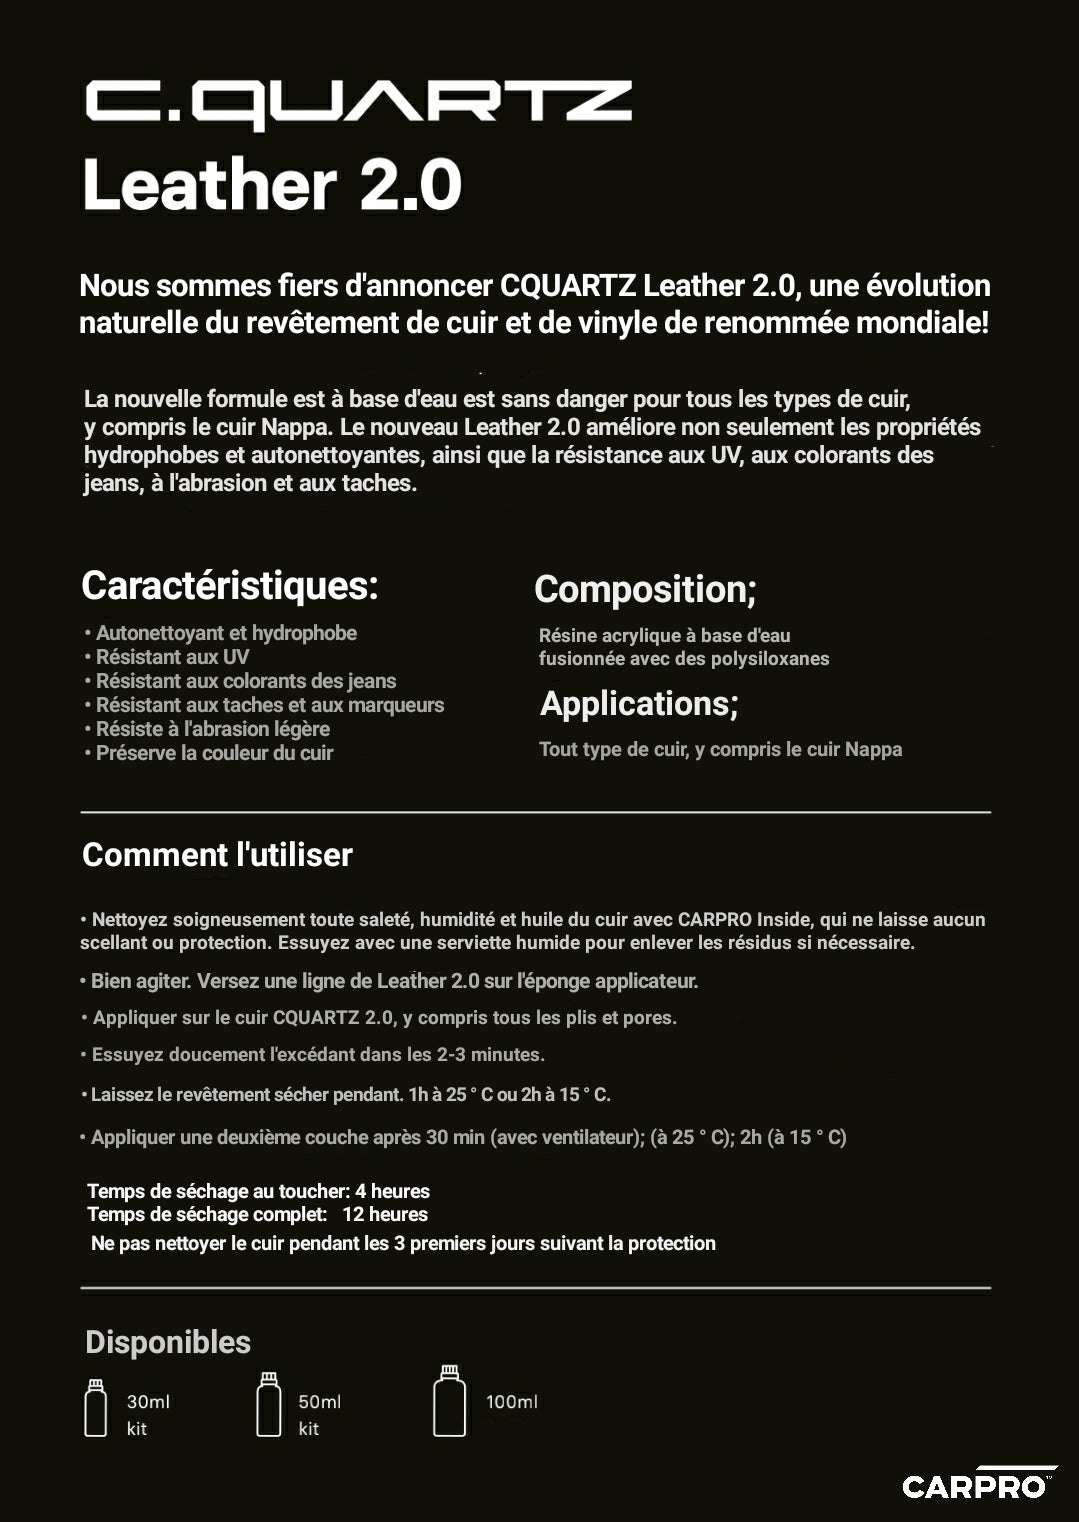 CQUARTZ - Leather 2.0 (Ceramic coating for leather)